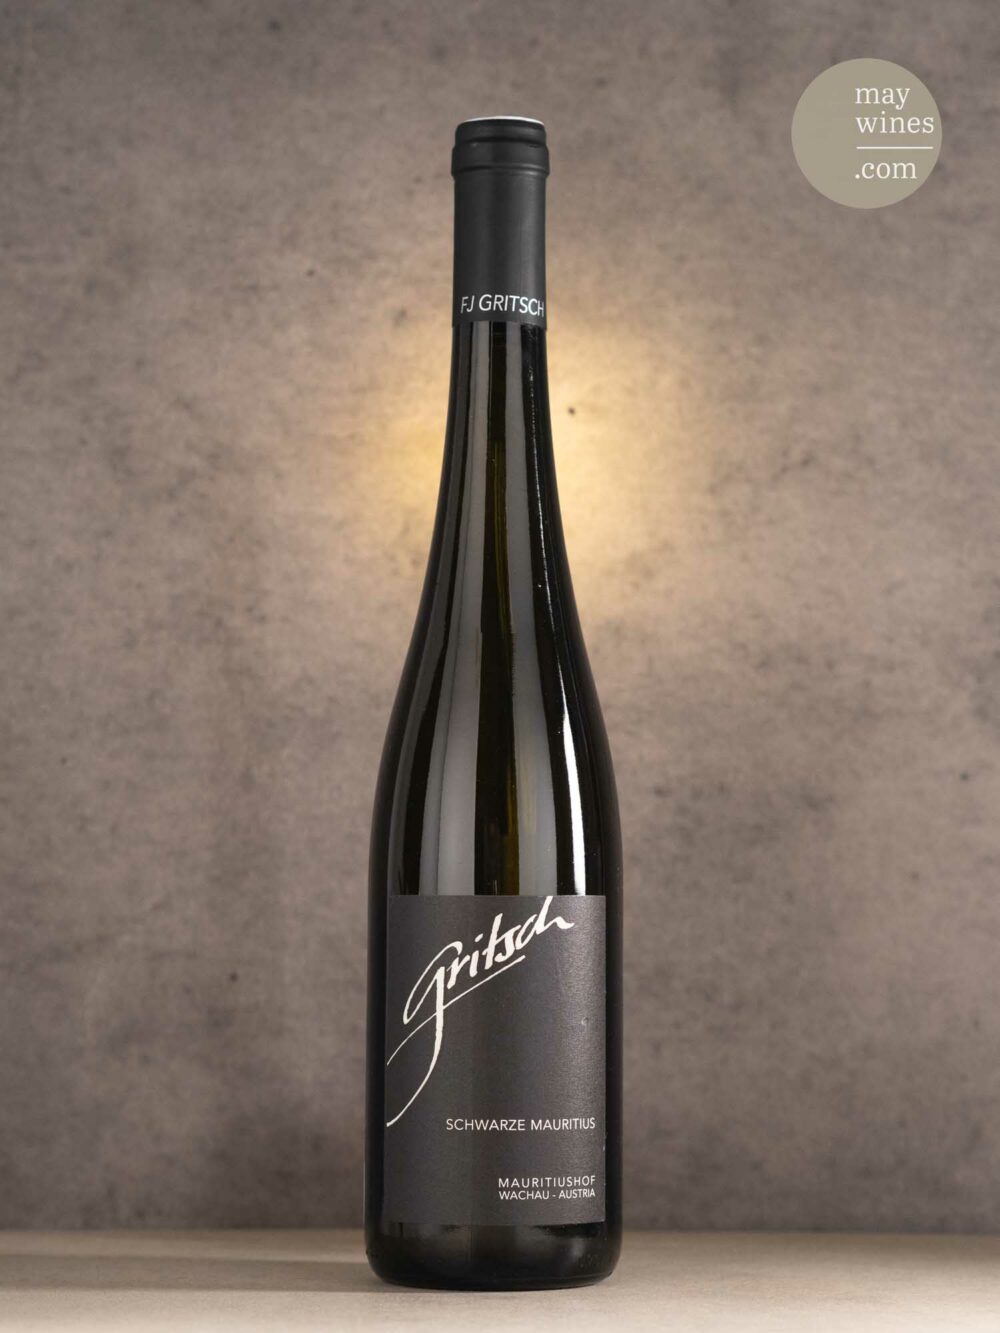 May Wines – Weißwein – 2016 Schwarze Mauritus Grüner Veltliner - Weingut FJ Gritsch - Mauritiushof